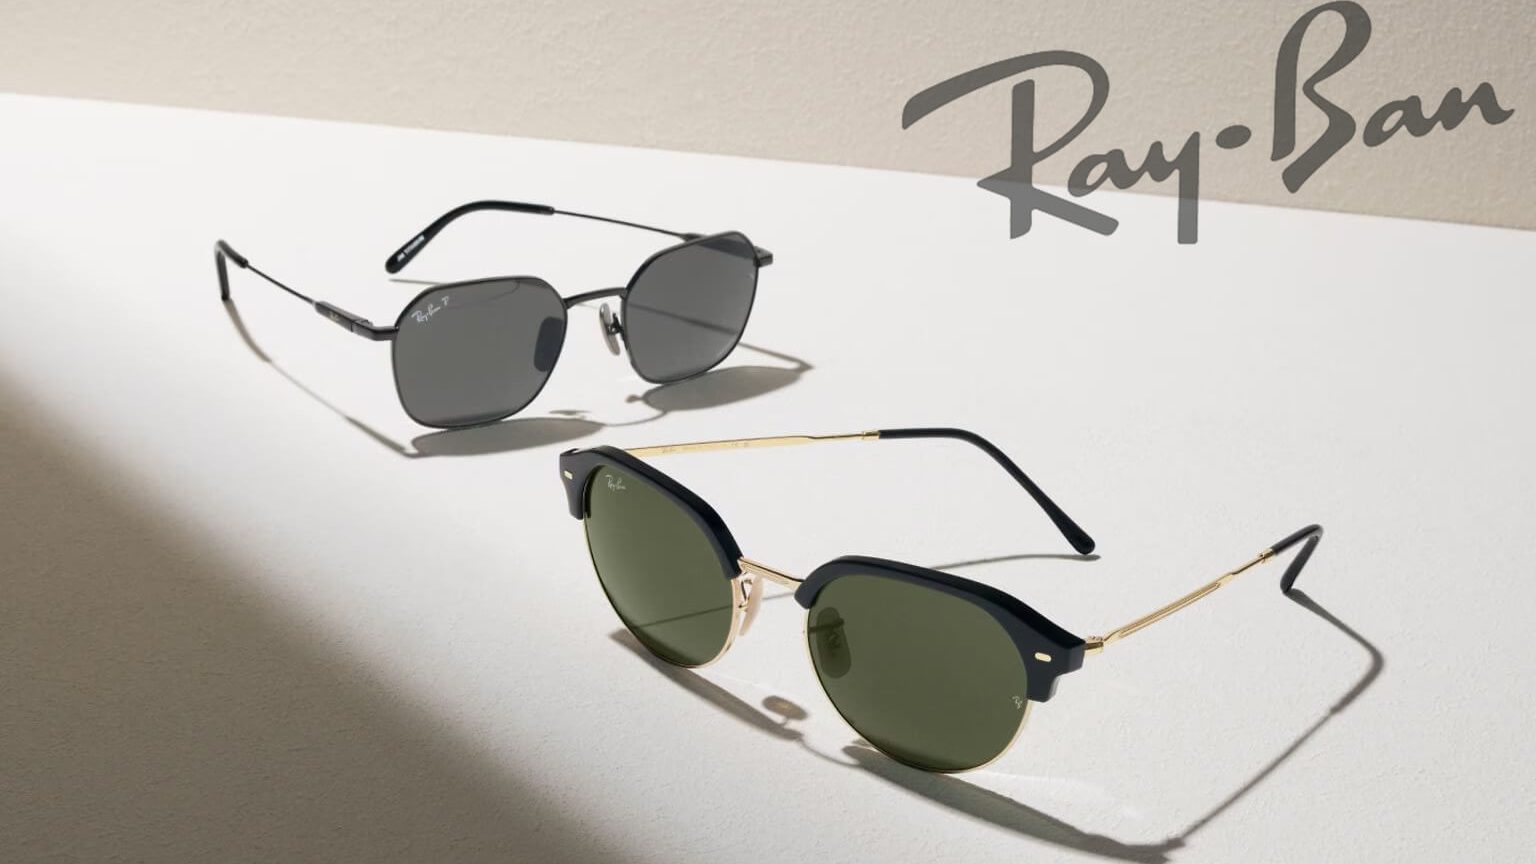 Fake Ray Ban sunglasses